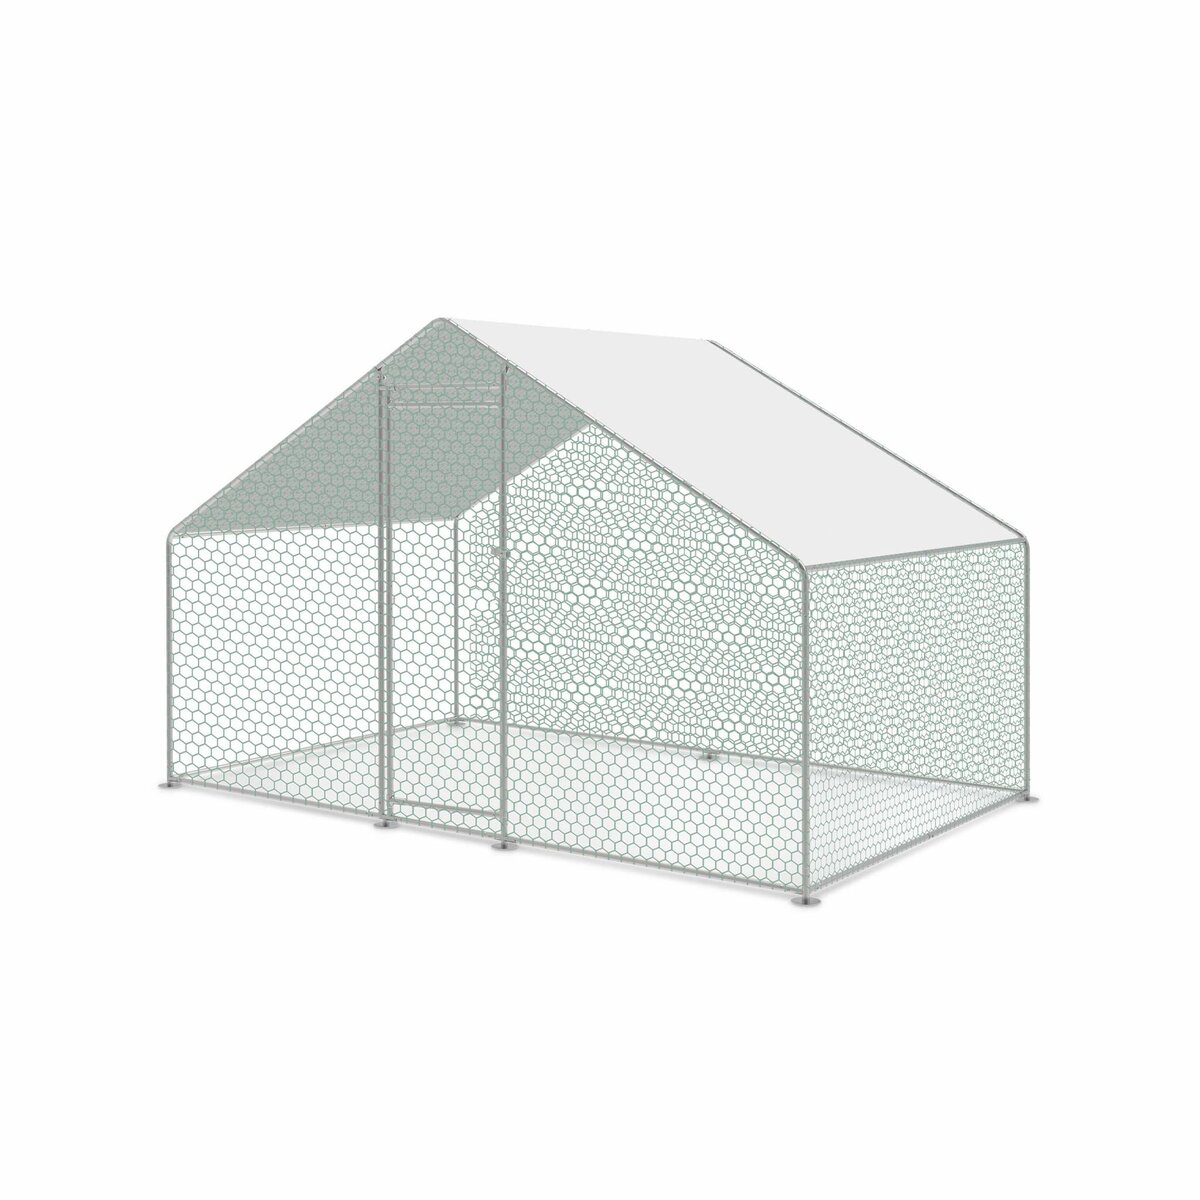  Enclos pour poulailler en acier galvanisé, toit imperméable et anti UV, porte avec loquet